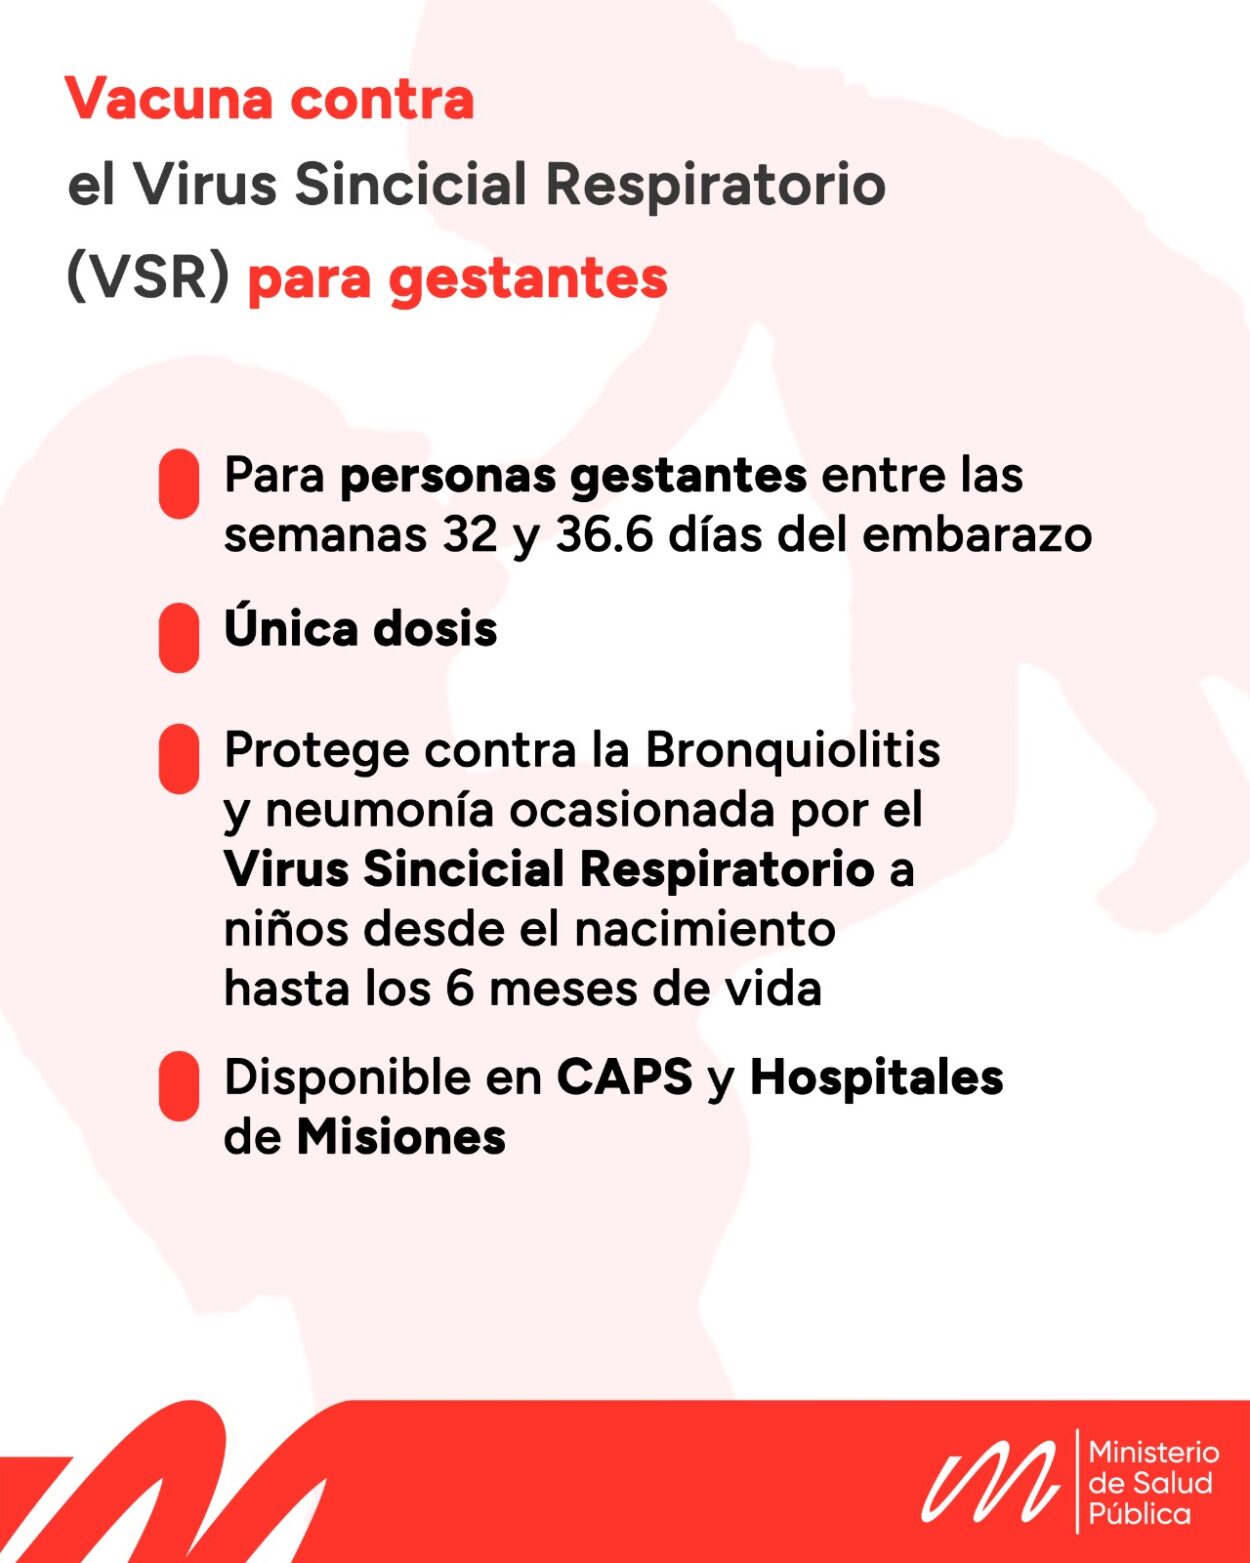 El próximo lunes arrancará la vacunación contra el Virus Sincicial Respiratorio para personas gestantes en Misiones imagen-35